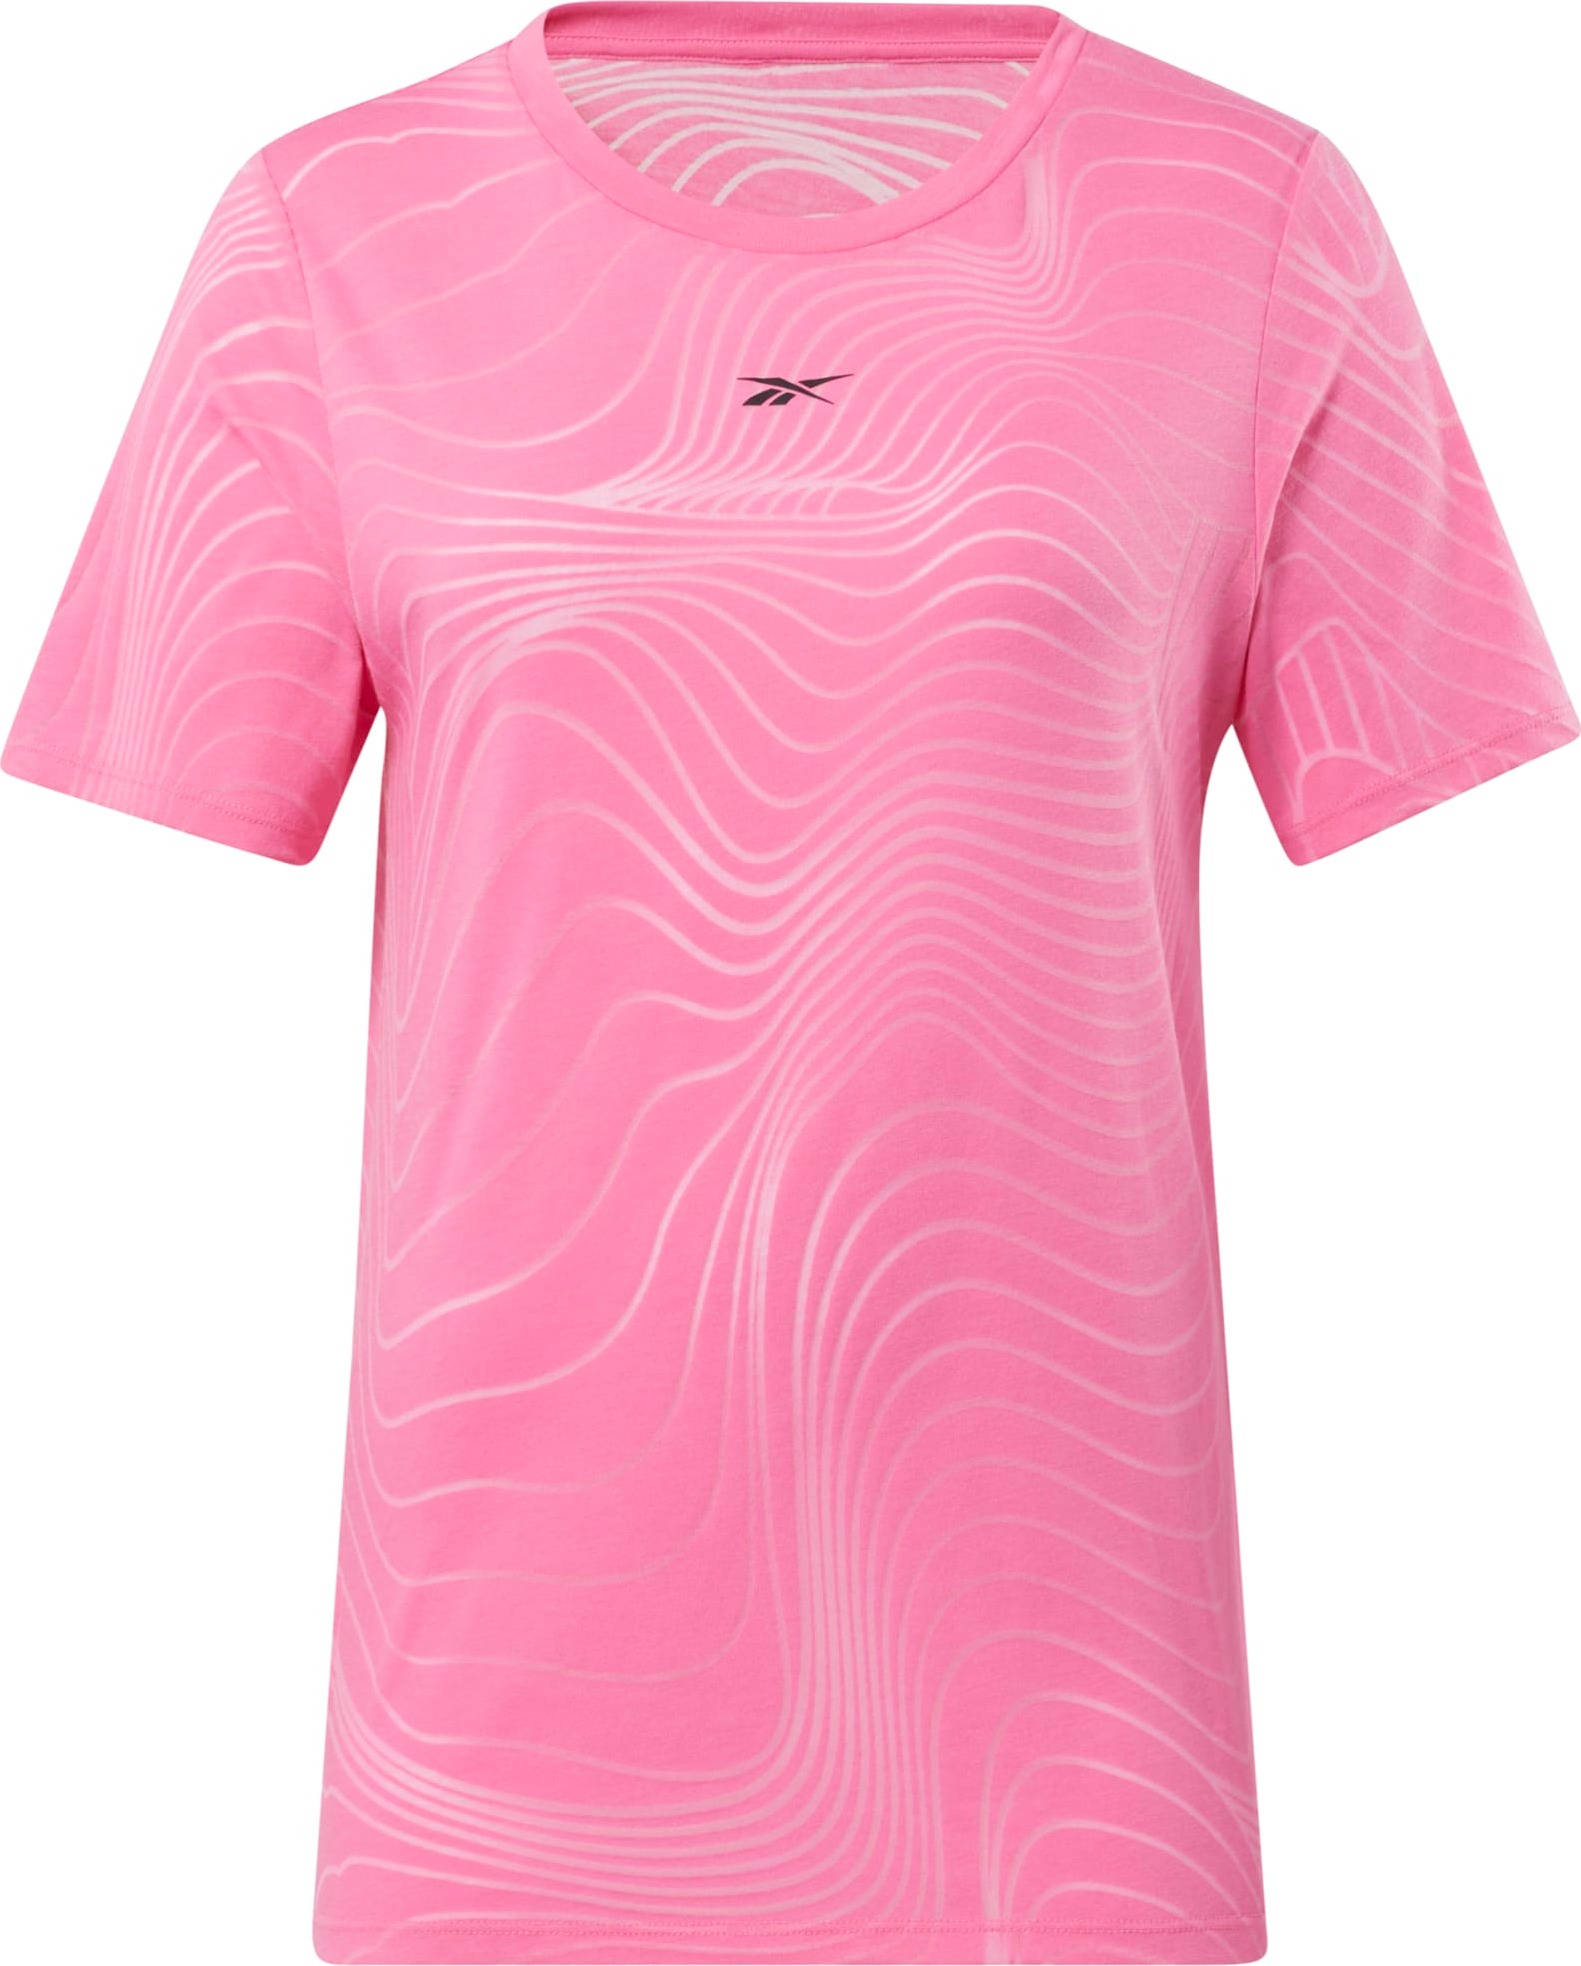 Reebok Women’s Burnout T-Shirt True Pink